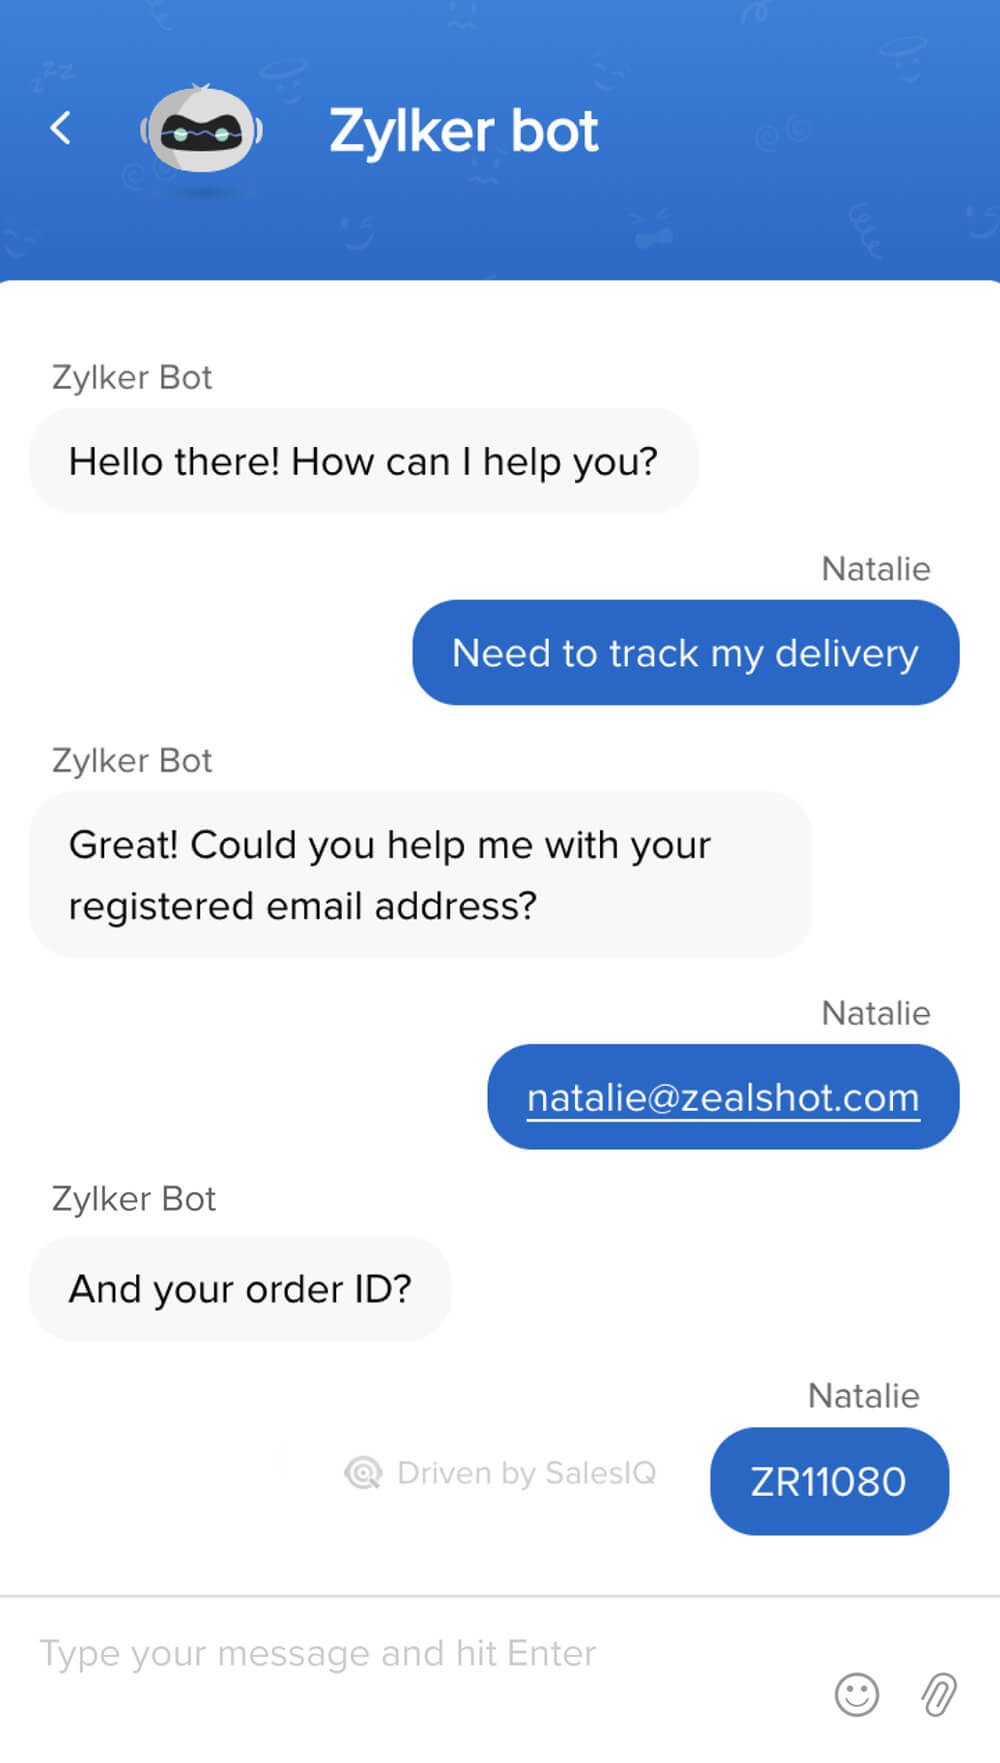 Cung cấp hỗ trợ khách hàng 24/7 với chatbot